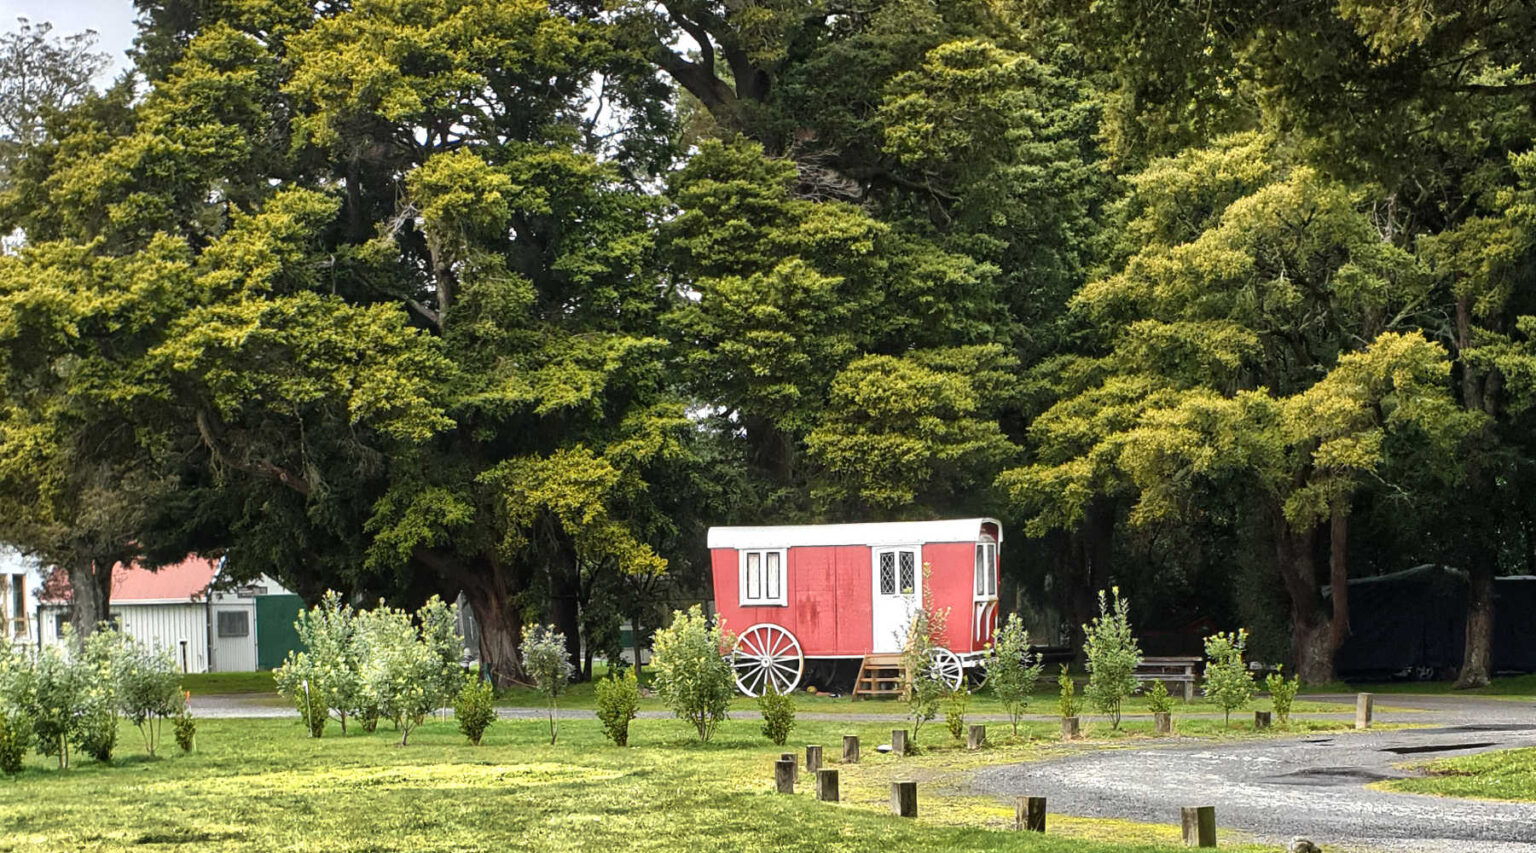 Greytown camping ground accommodation option, Wairarapa, New Zealand